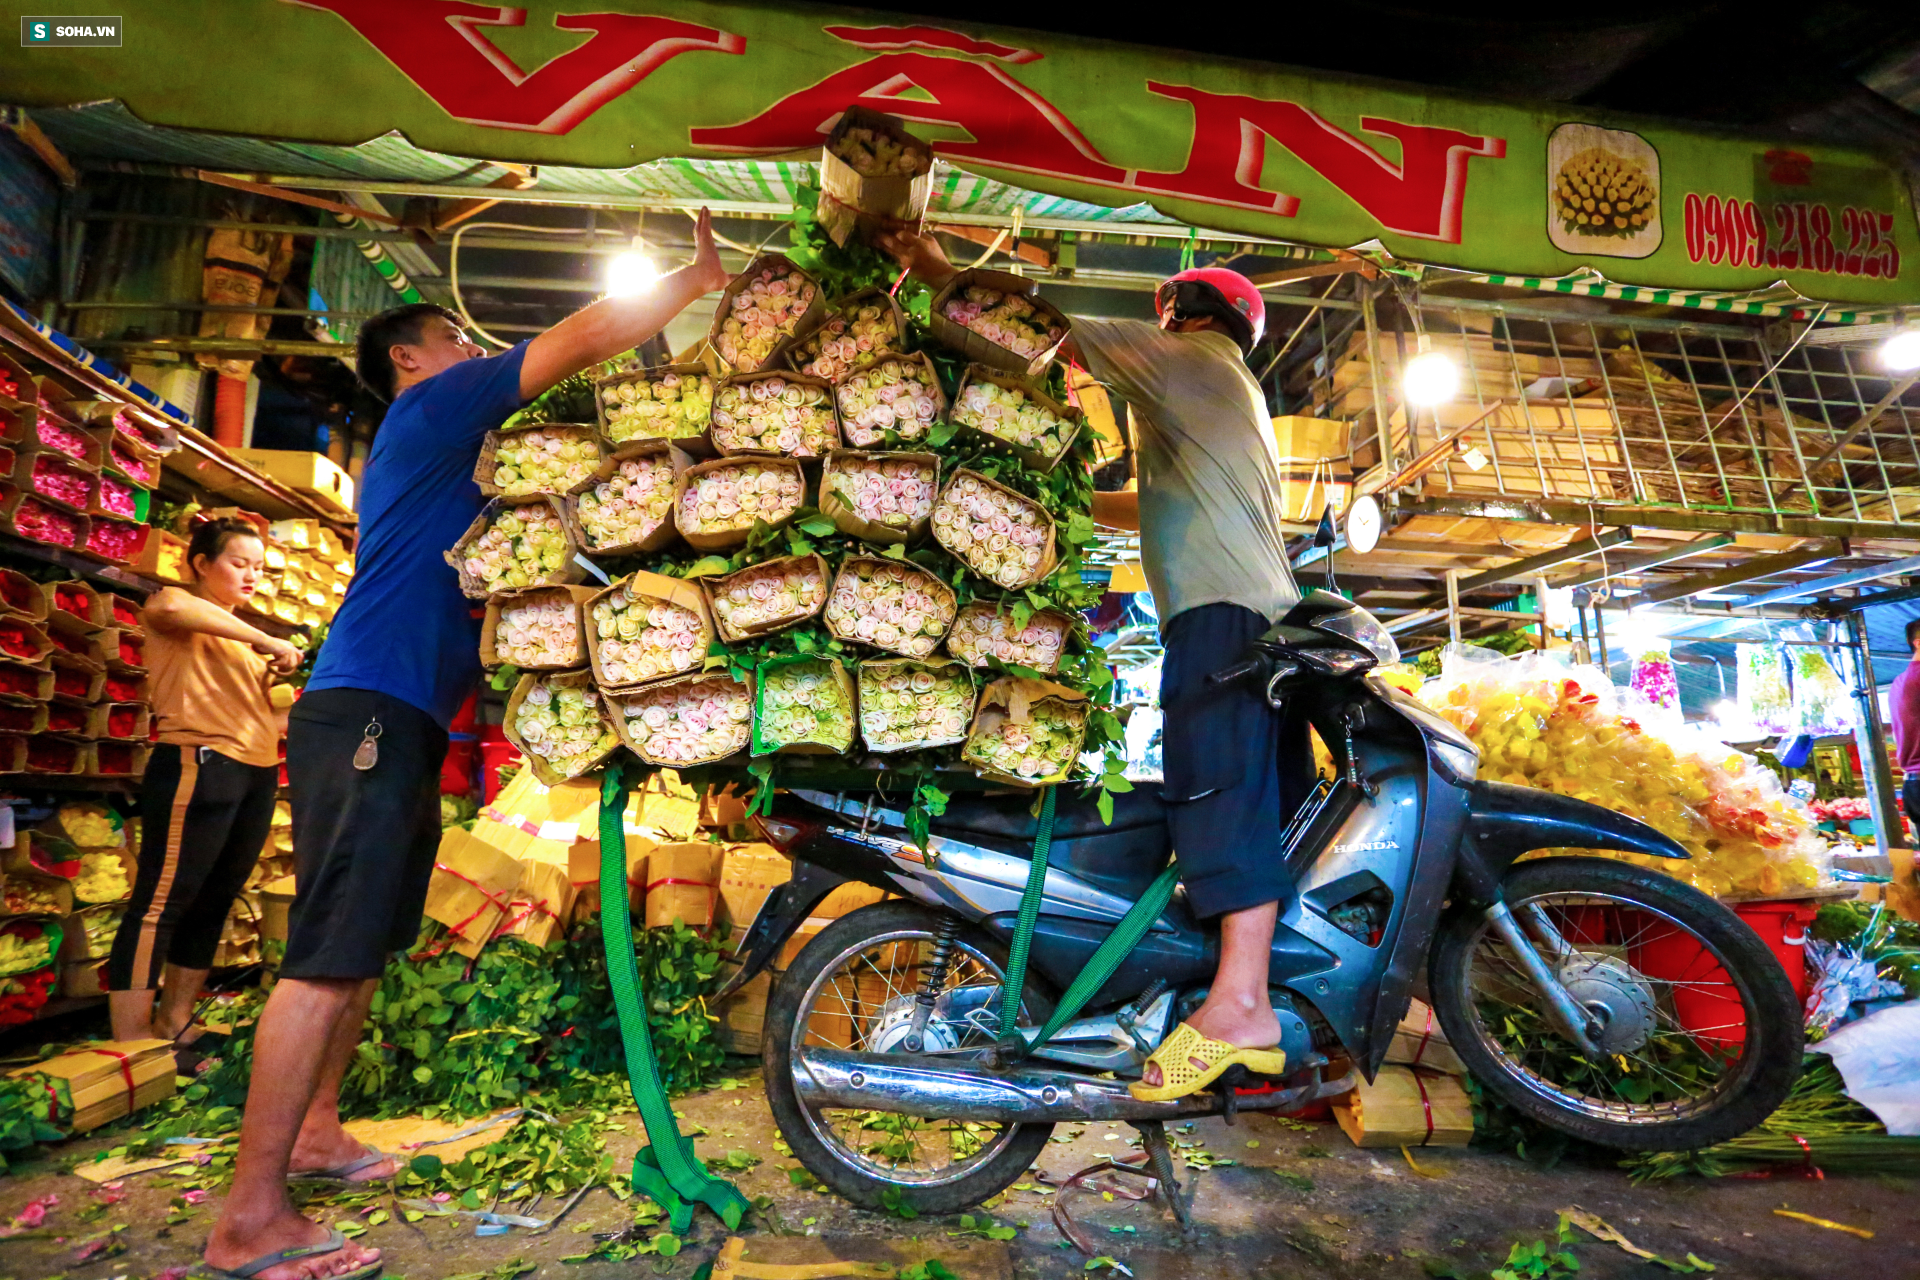 Chợ hoa 30 năm không ngủ ở Sài Gòn nhộn nhịp lúc 2 giờ sáng đón ngày 8/3 - Ảnh 3.